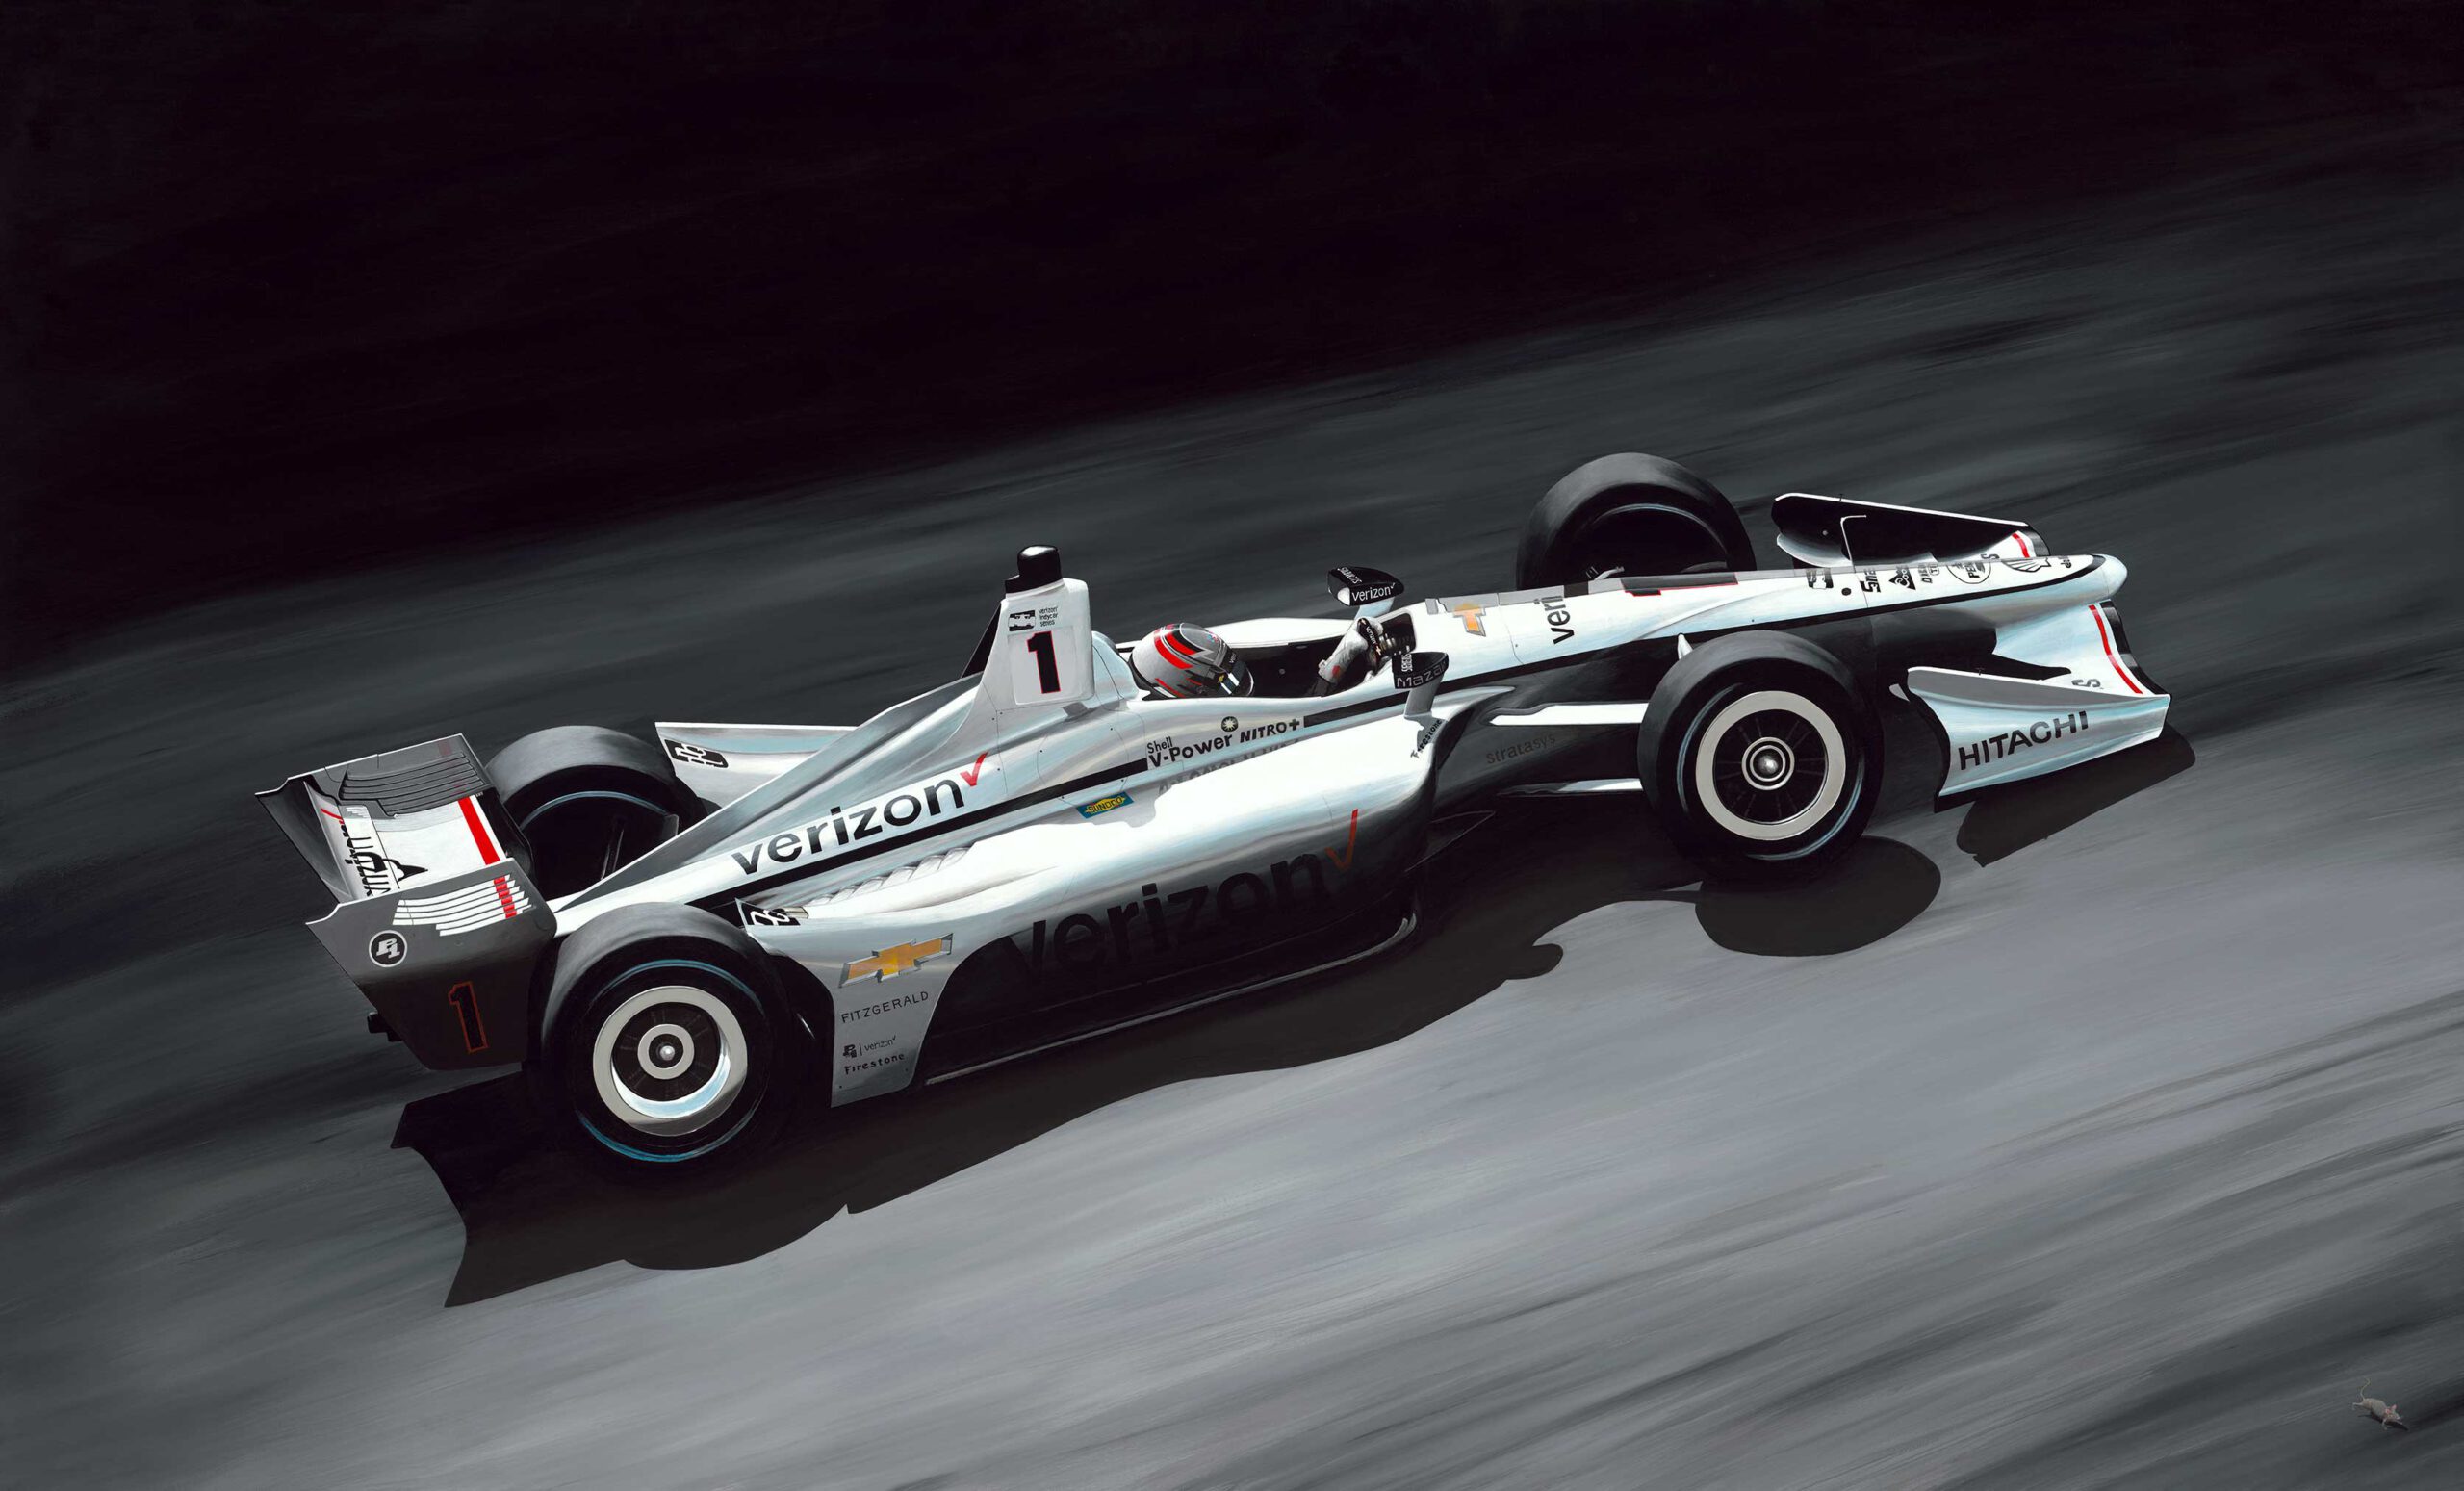 DALLARA Indy Car #2 Josef Newgarden "hitachi" Team Penske NTT Indycar Series Cha for sale online 